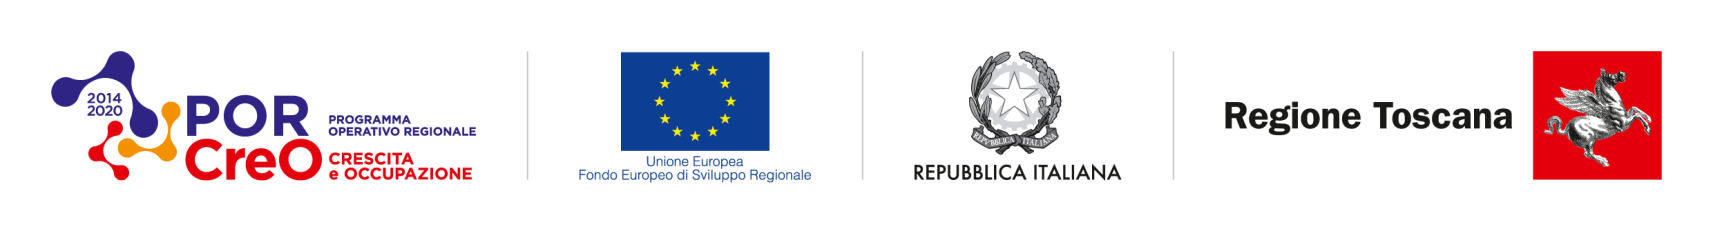 POR CreO - Unione europea - Repubblica Italiana - Regione Toscana